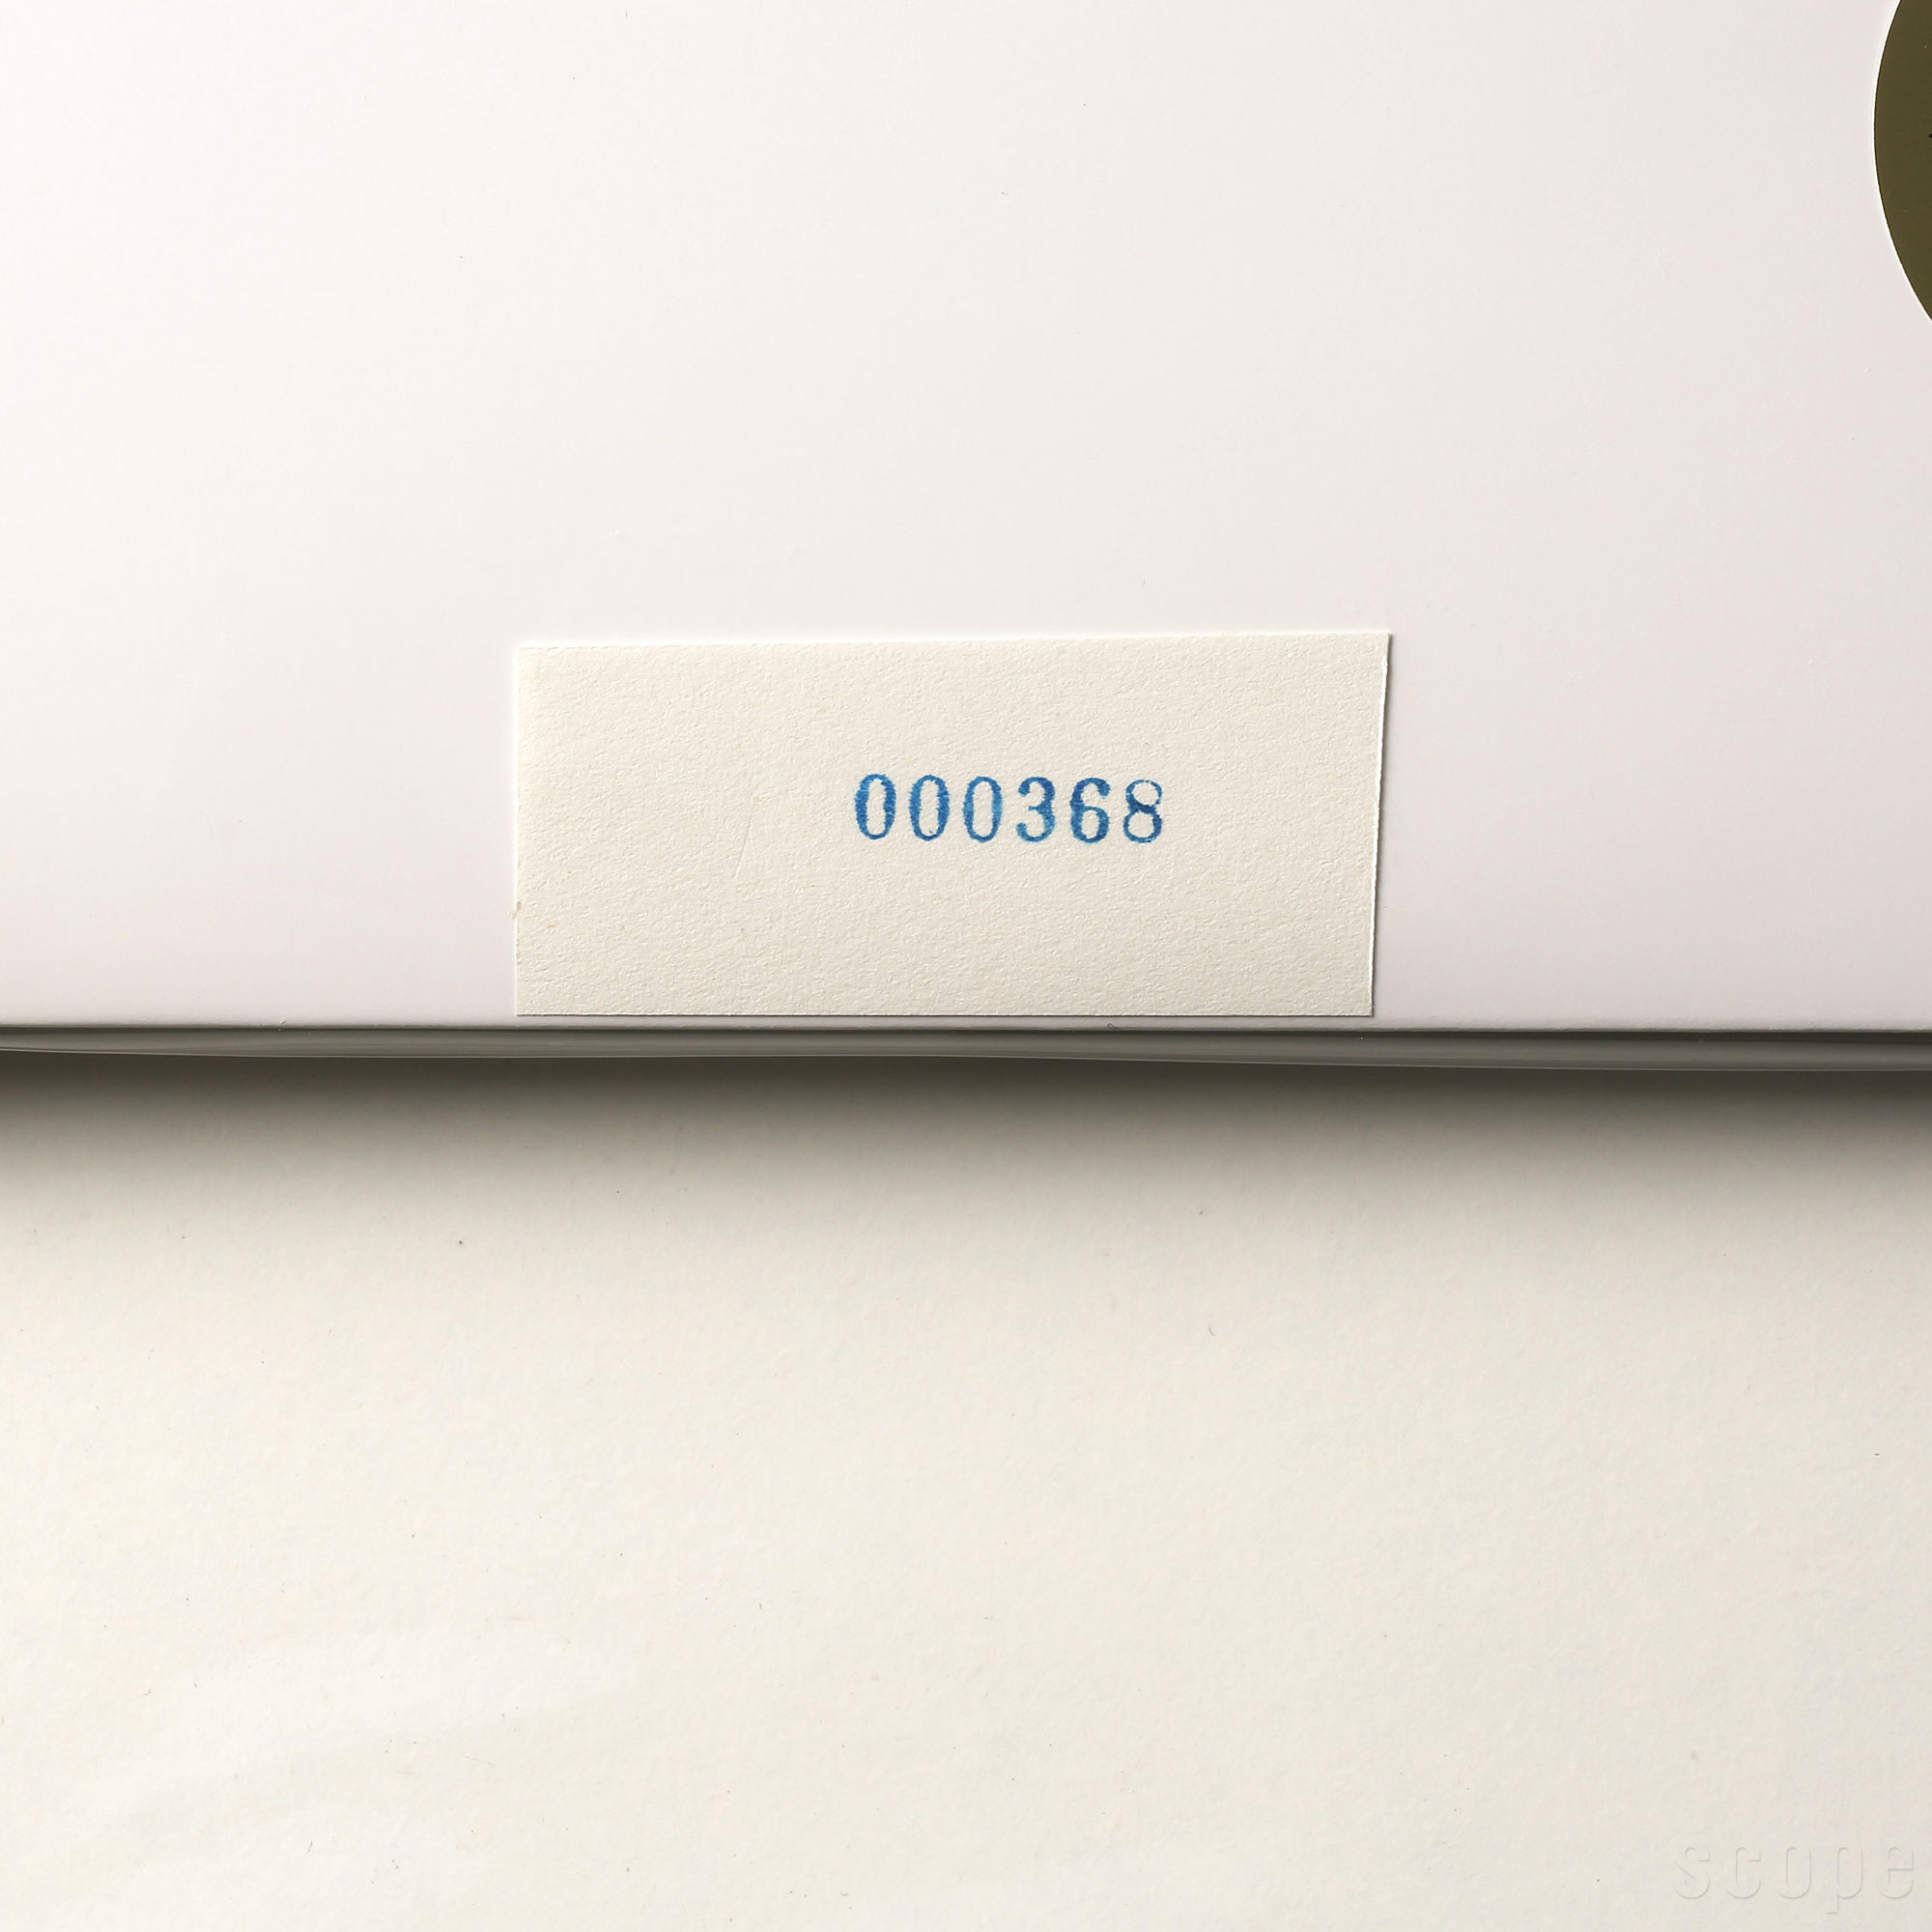 スペック 寸法 パッケージサイズ：314×312mm 備考 ナンバーがスタンプされた紙が同封されています。個別画像はそちらを撮影しています。